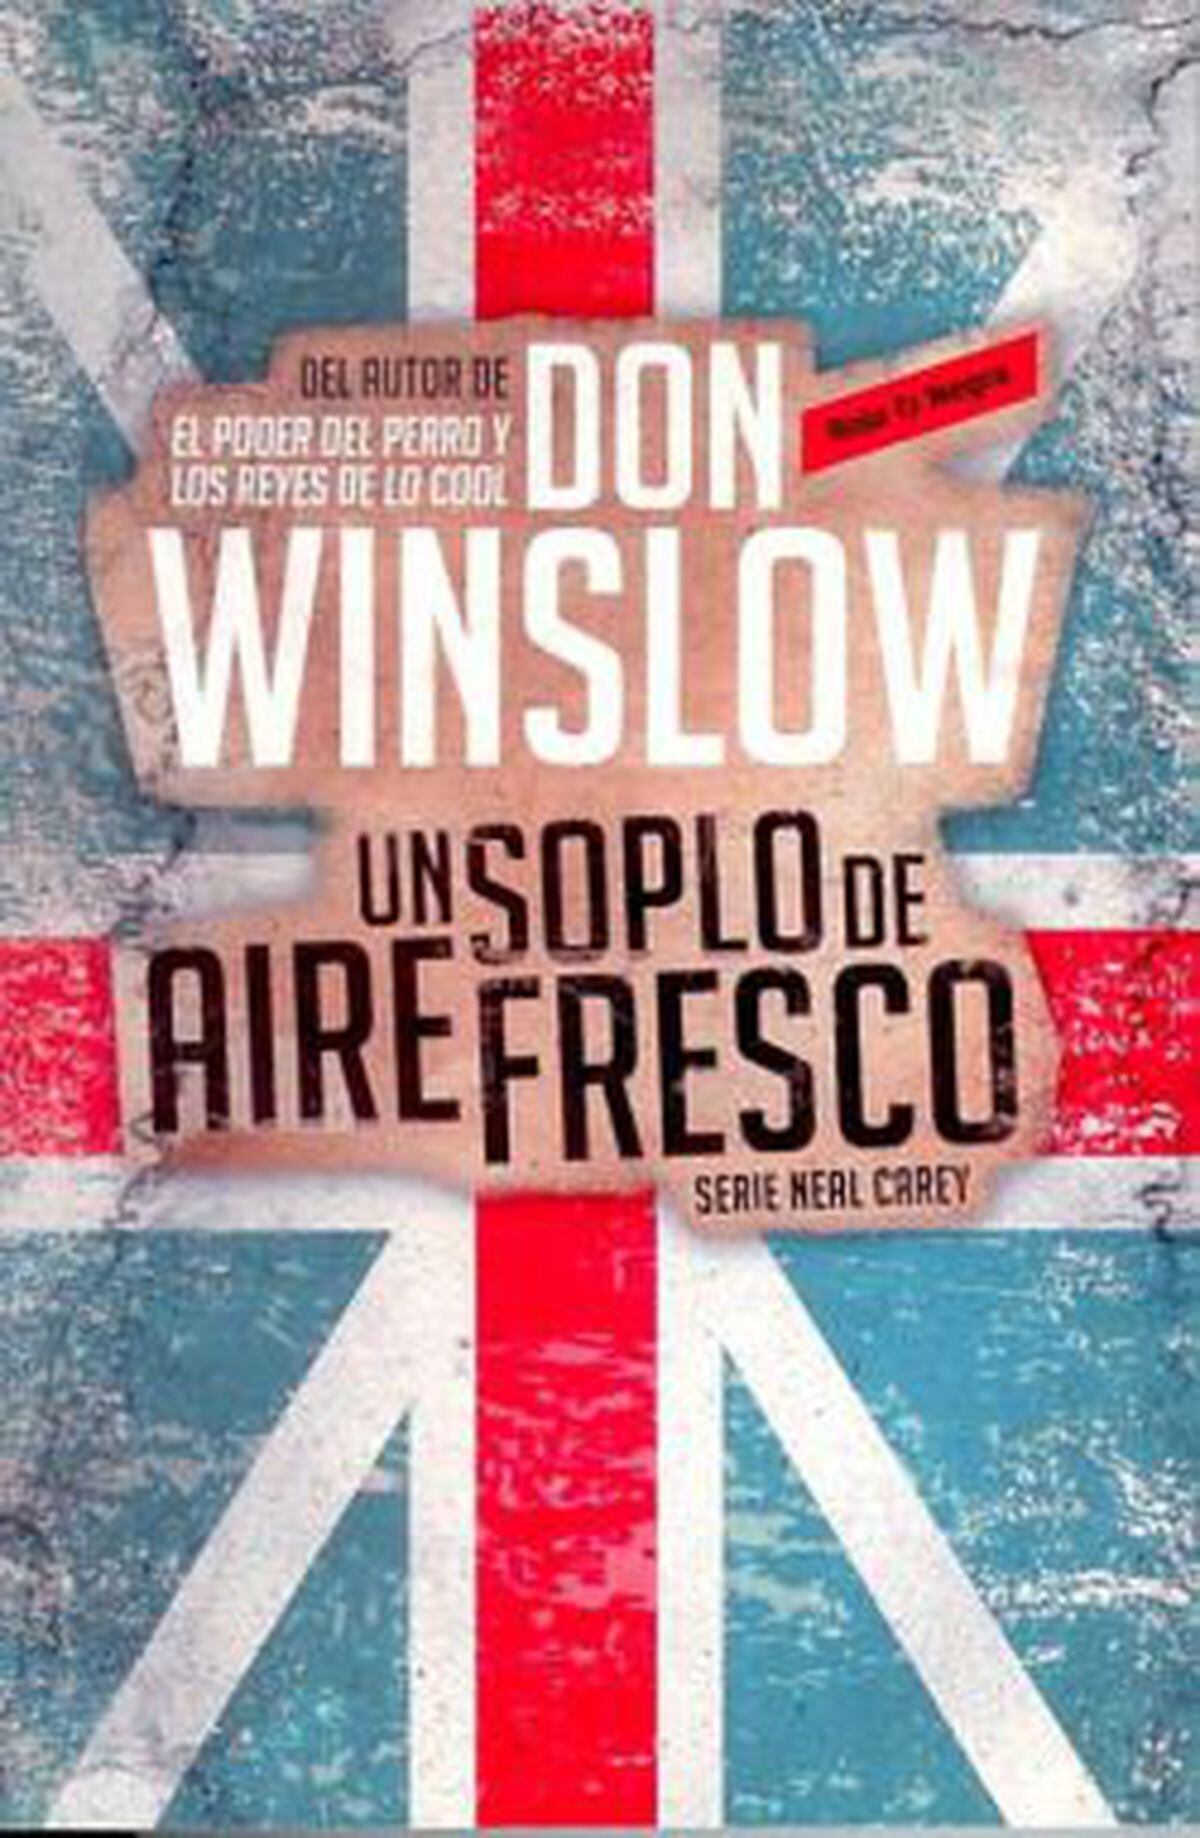 El poder del perro - Don Winslow -5% en libros